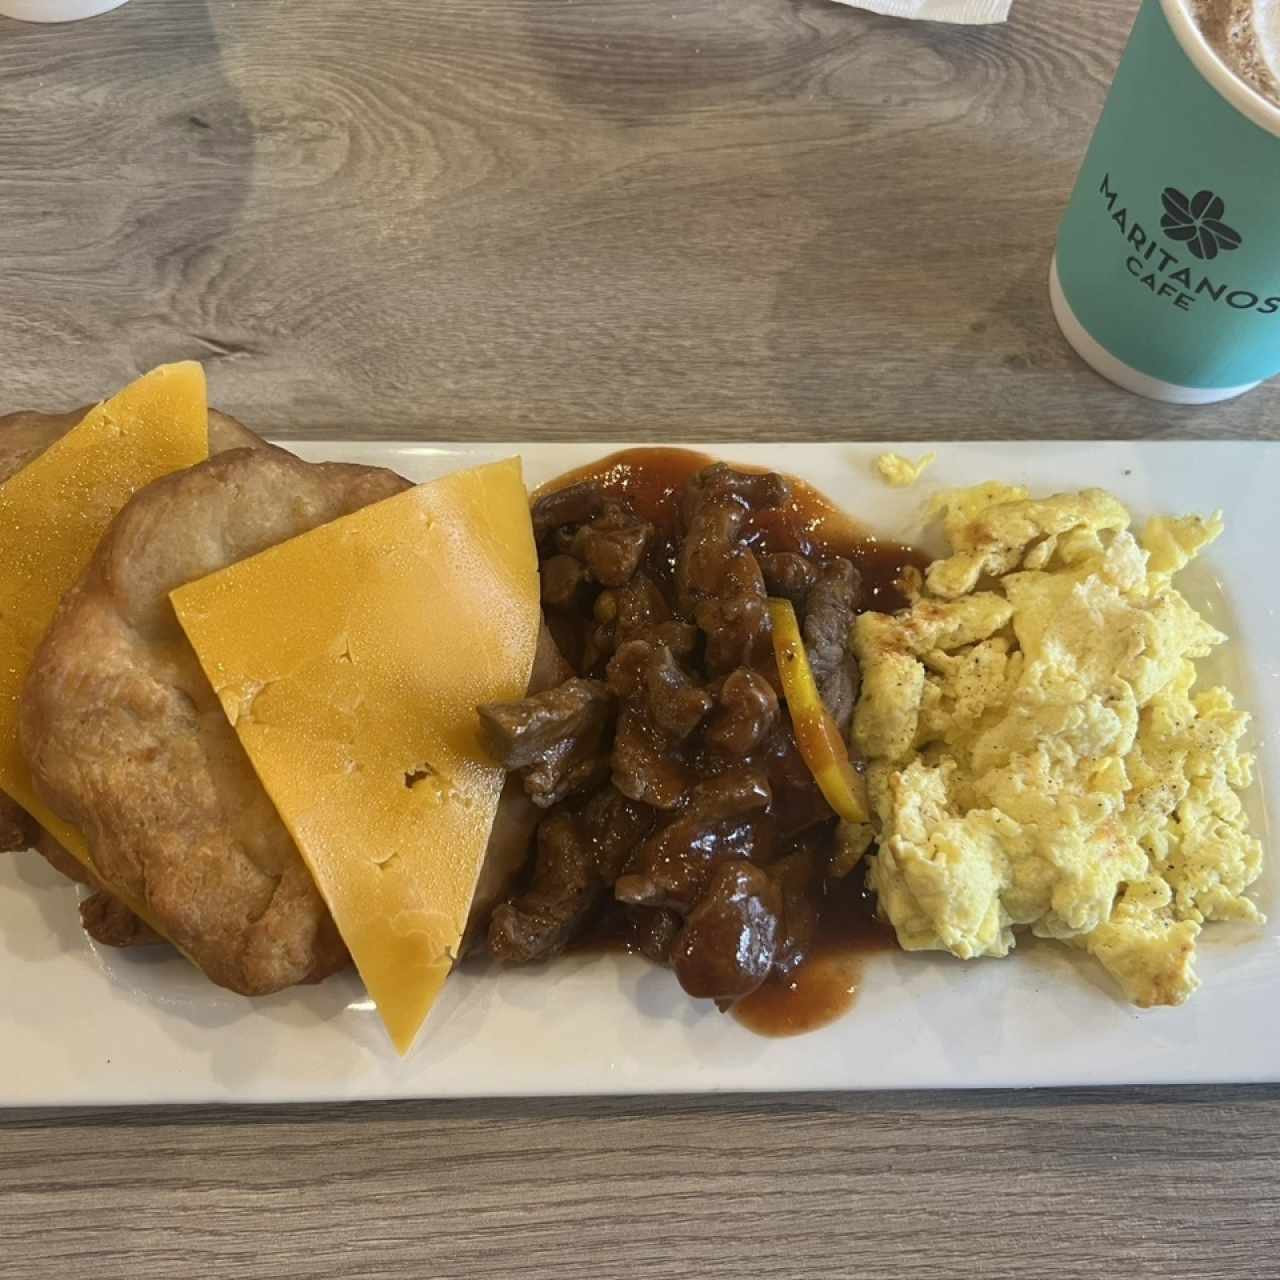 Desayuno Americano 